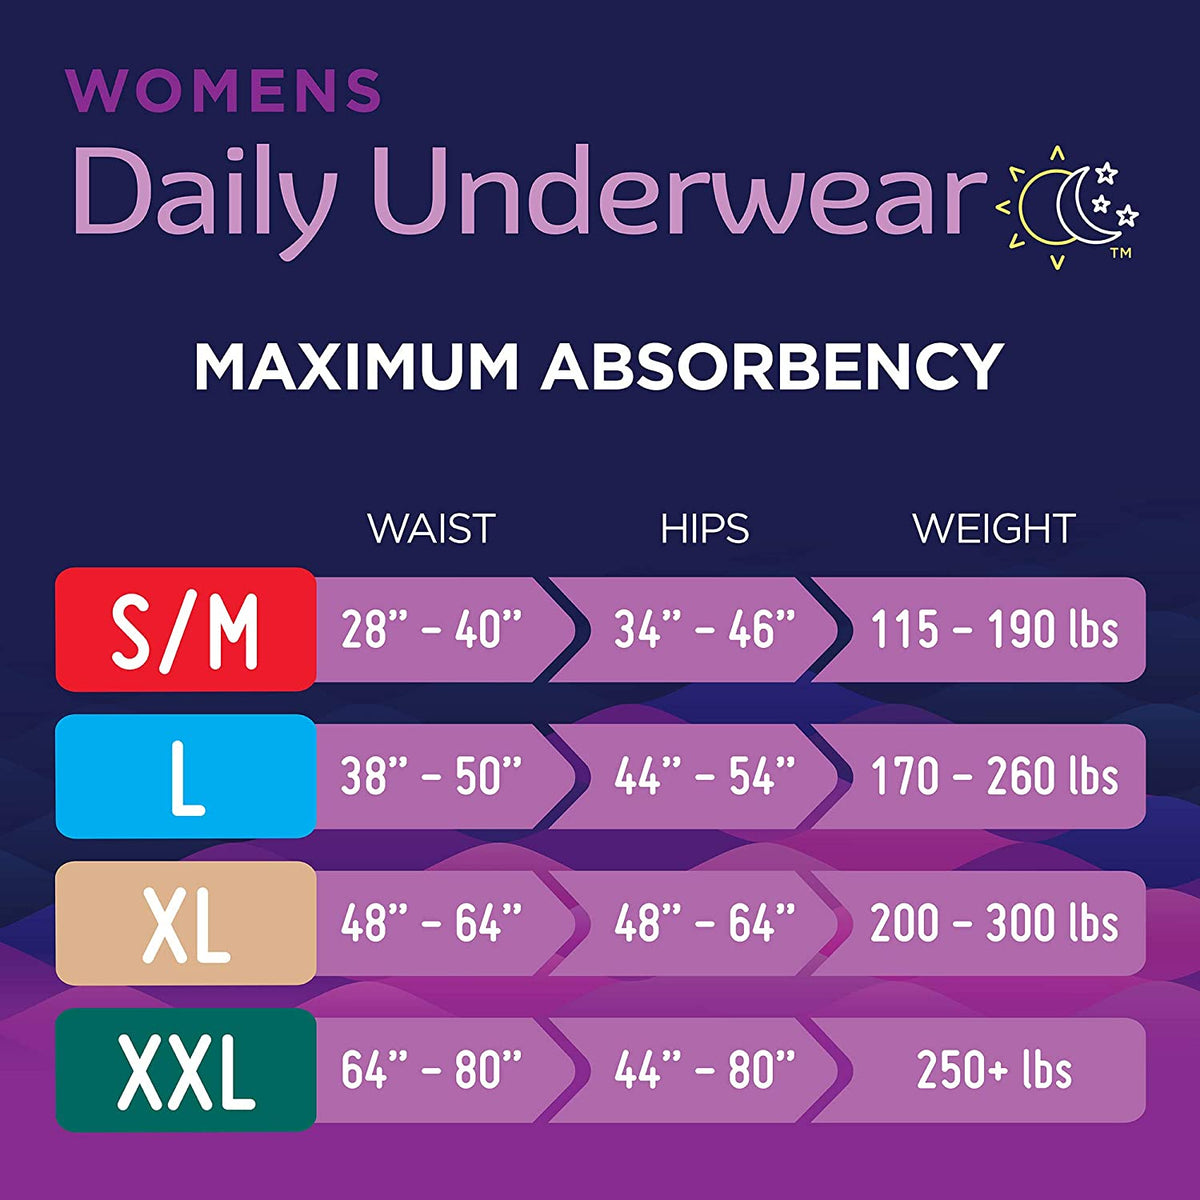 Prevail Daily Underwear For Women